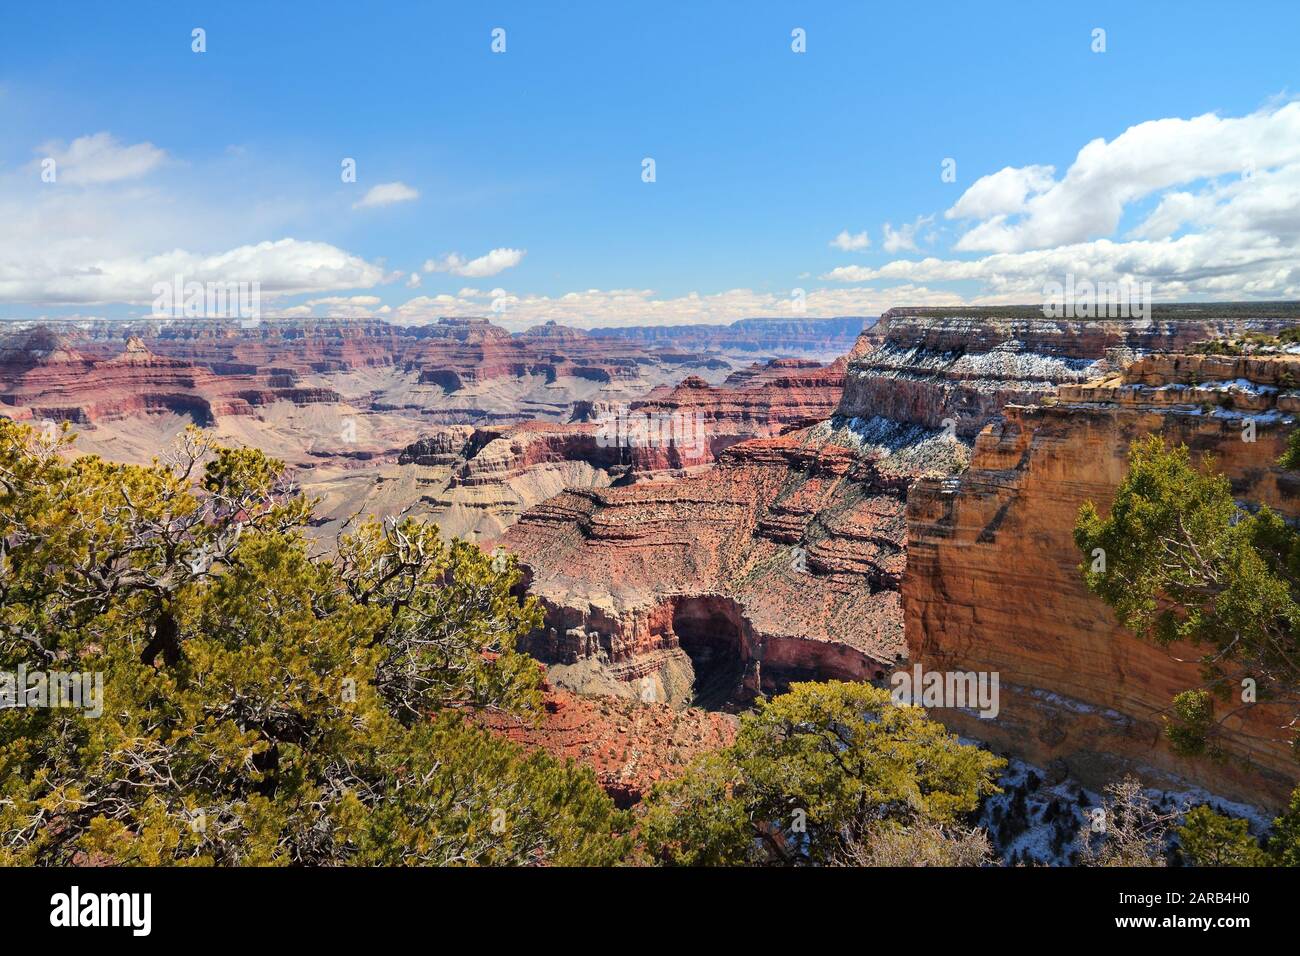 Le Parc National du Grand Canyon en Arizona, aux États-Unis. Yavapai Point négliger. Banque D'Images